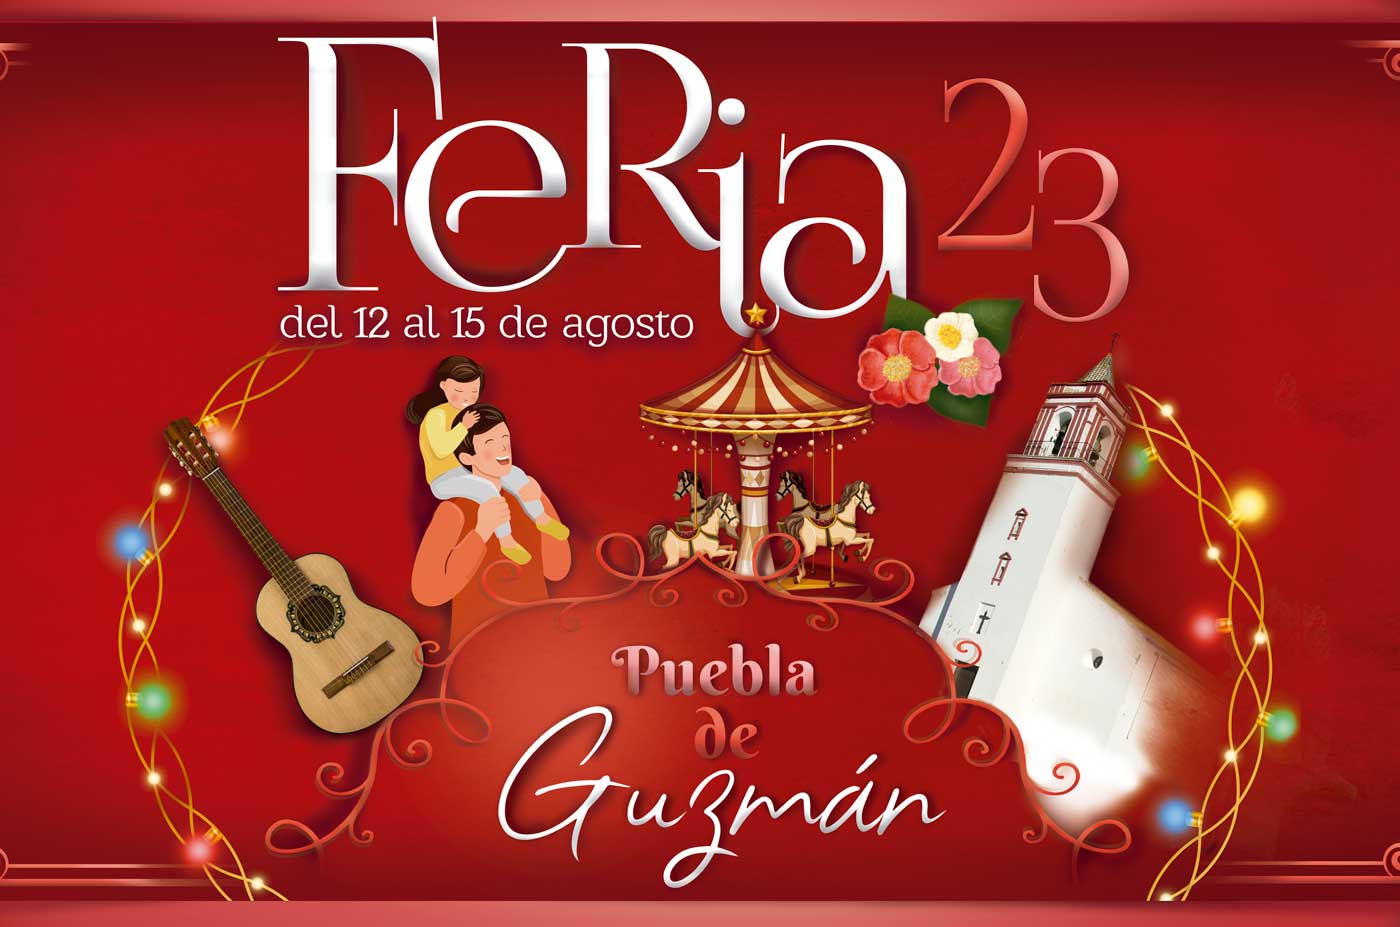 Feria Puebla de Guzman 2023 del 12 al 15 de agosto